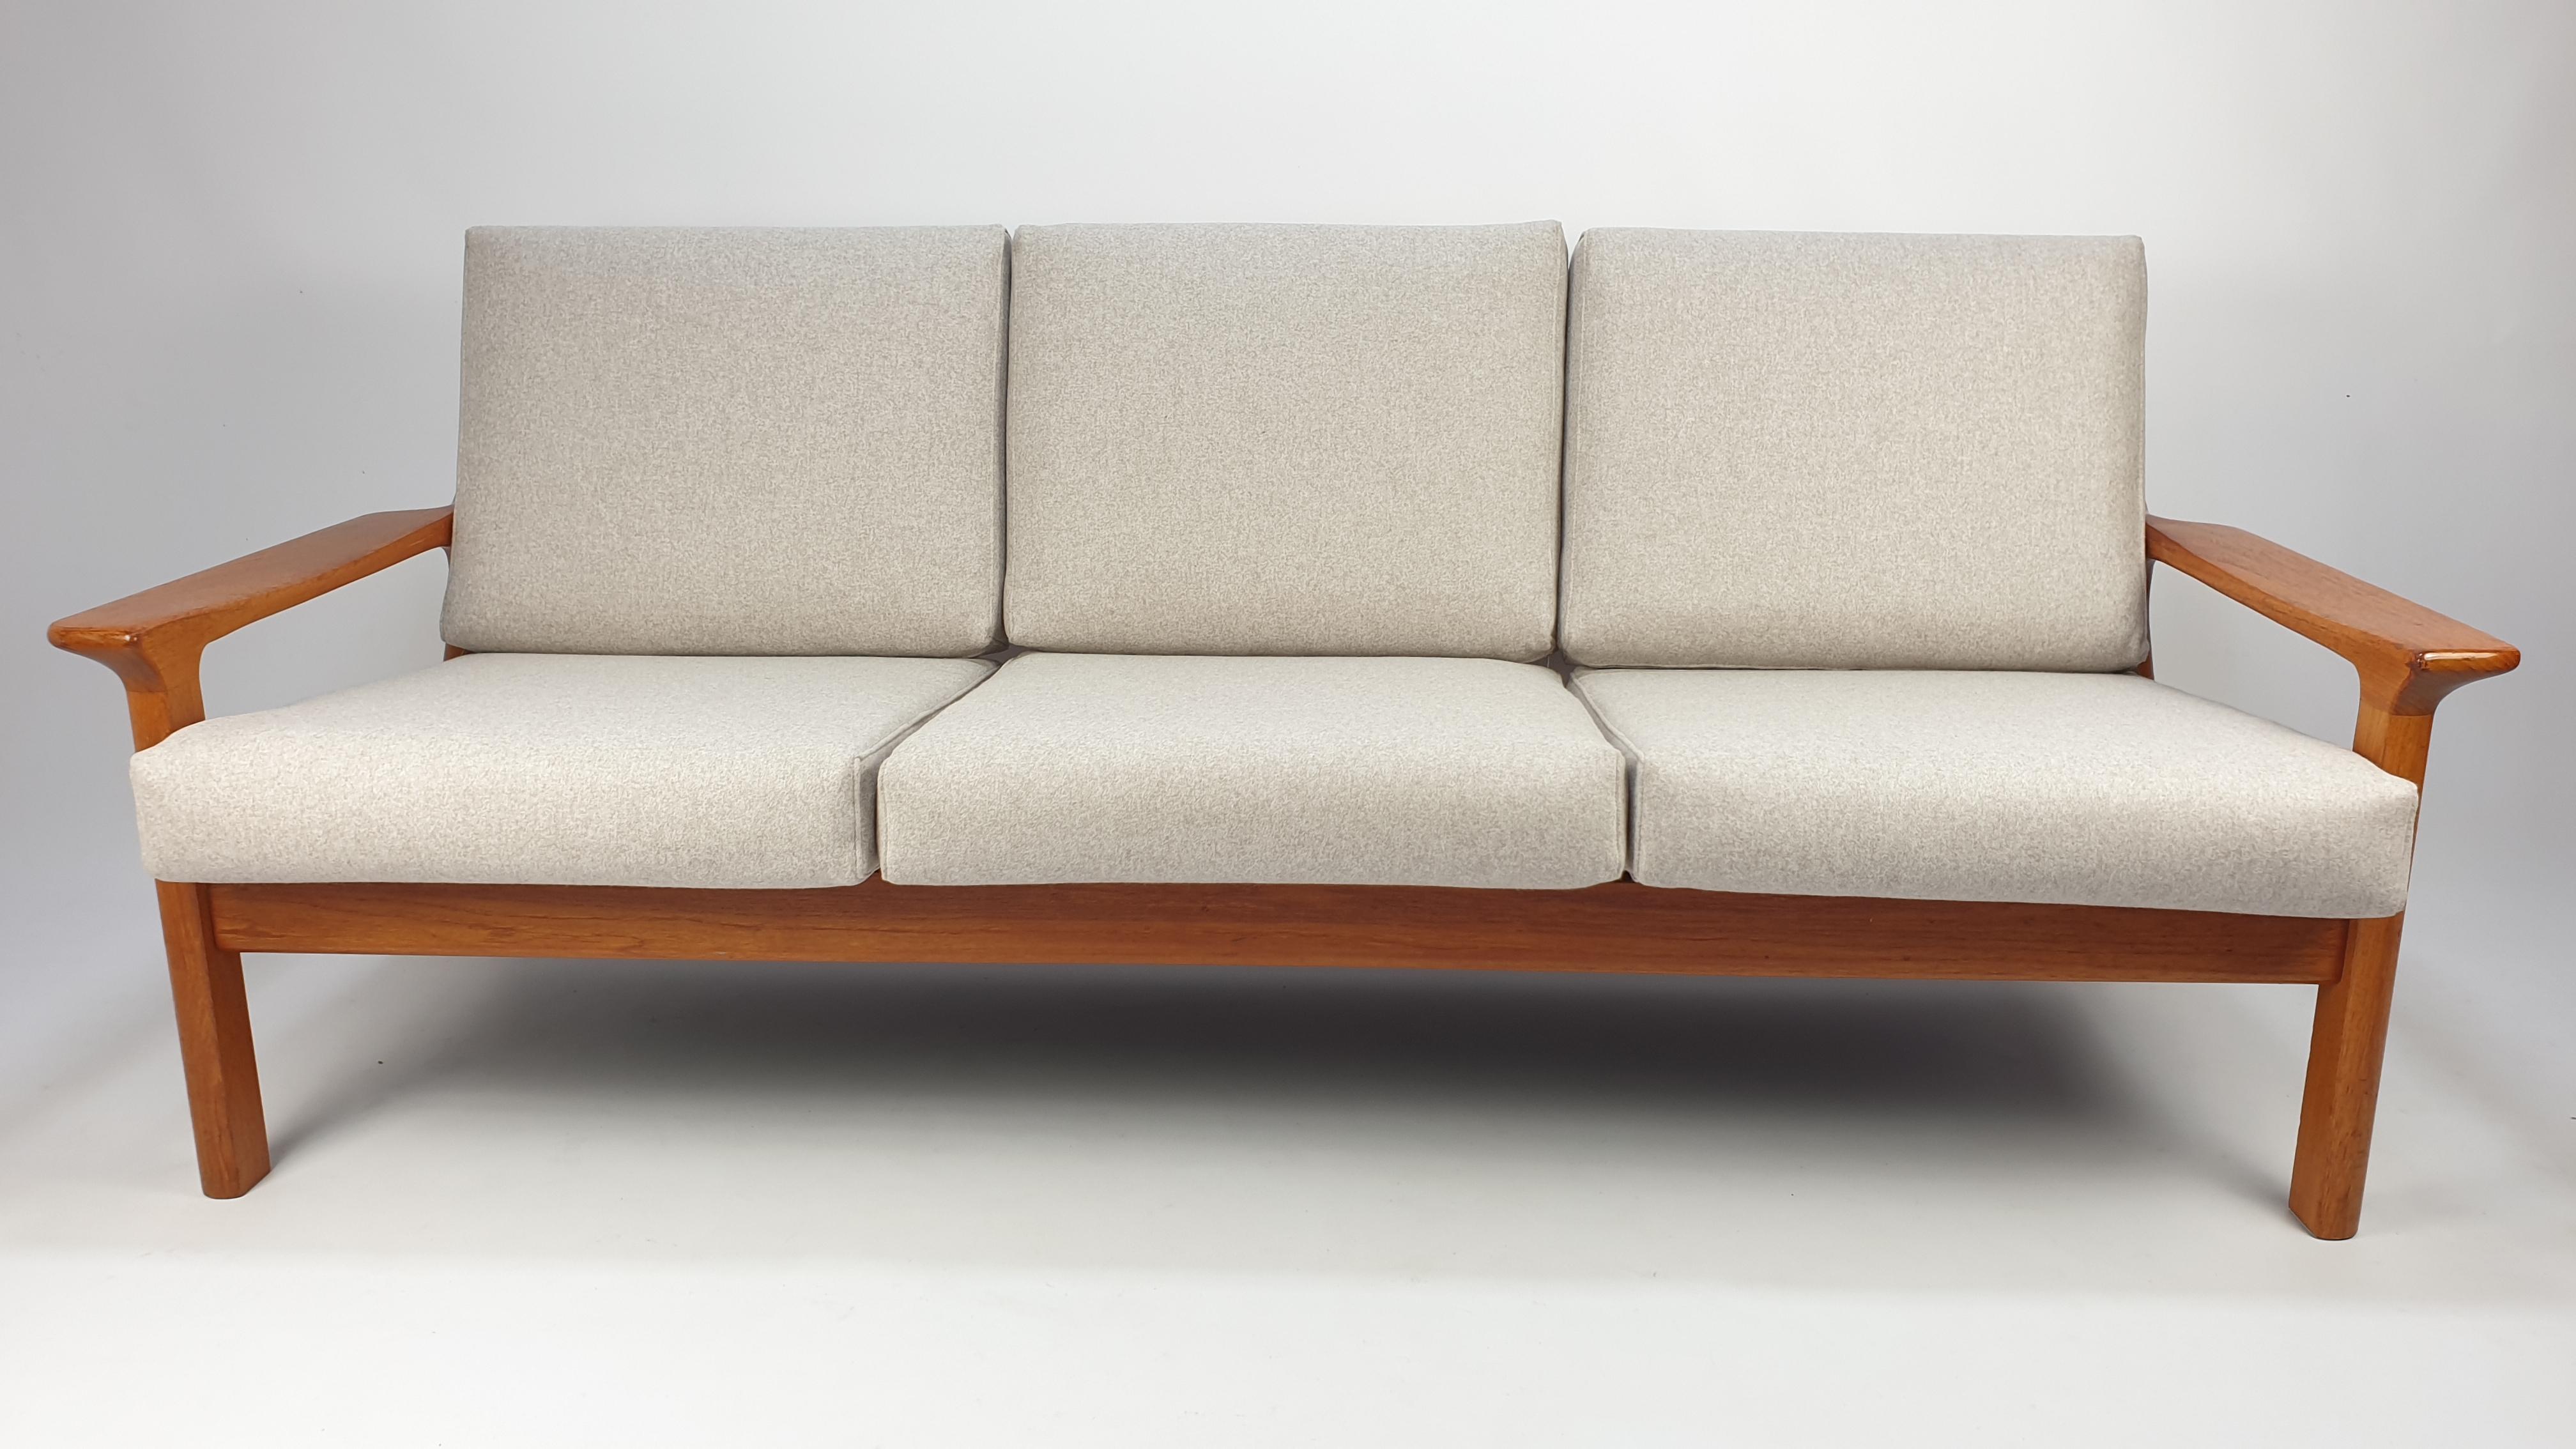 Elegantes Sofa, entworfen von Juul Kristensen und hergestellt in Dänemark von der Glostrup Møbelfabrik, um 1970er Jahre. 

Der Rahmen aus Teakholz und die geschwungenen Armlehnen mit ihren organischen Formen zeugen von einer außergewöhnlichen